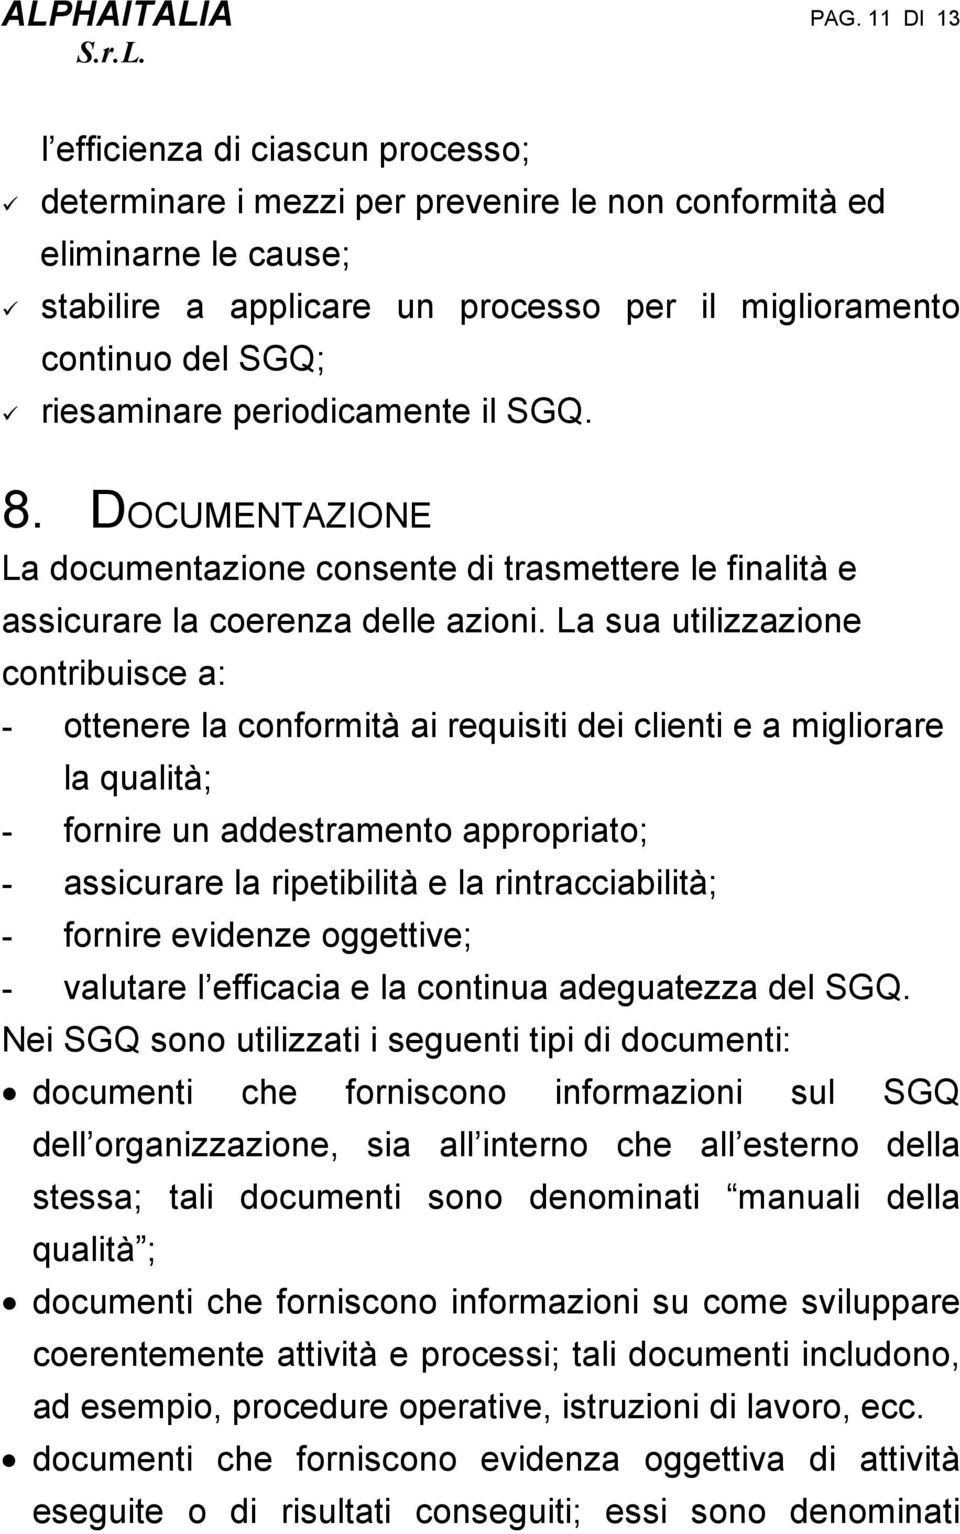 SGQ. 8. DOCUMENTAZIONE La documentazone consente d trasmettere le fnaltà e asscurare la coerenza delle azon.